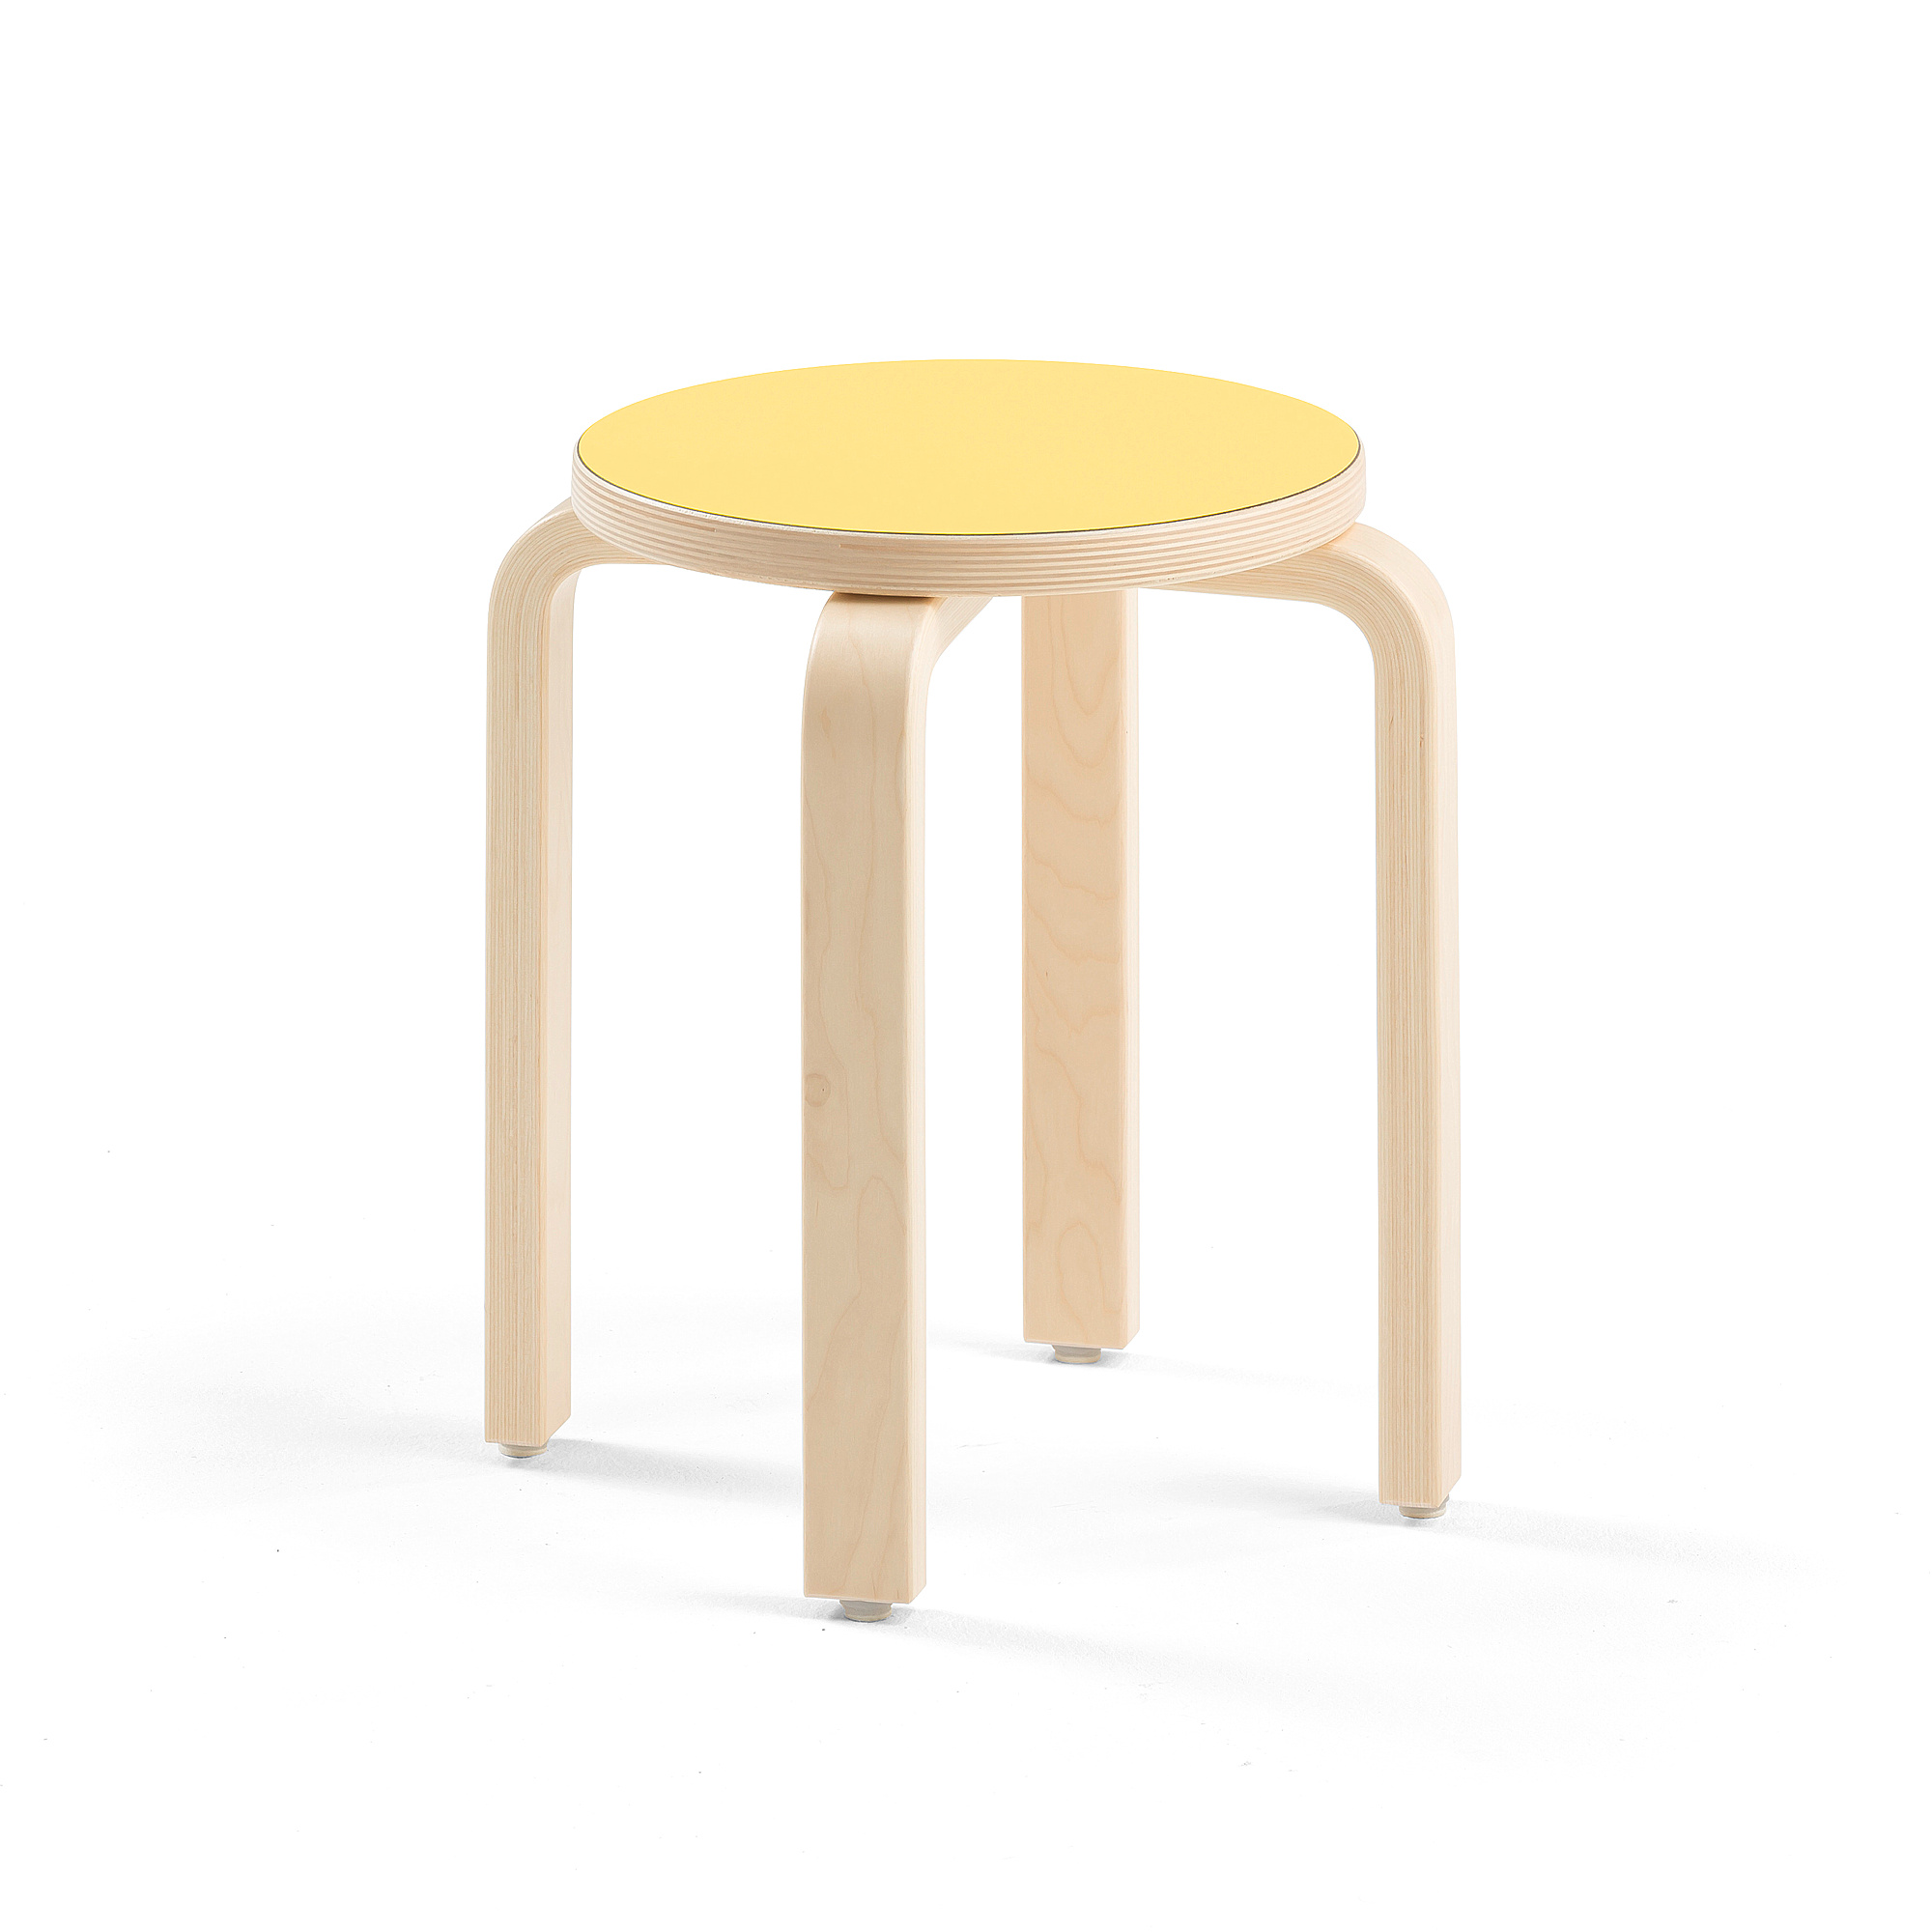 Dětská stolička DANTE, výška 380 mm, bříza/žlutá